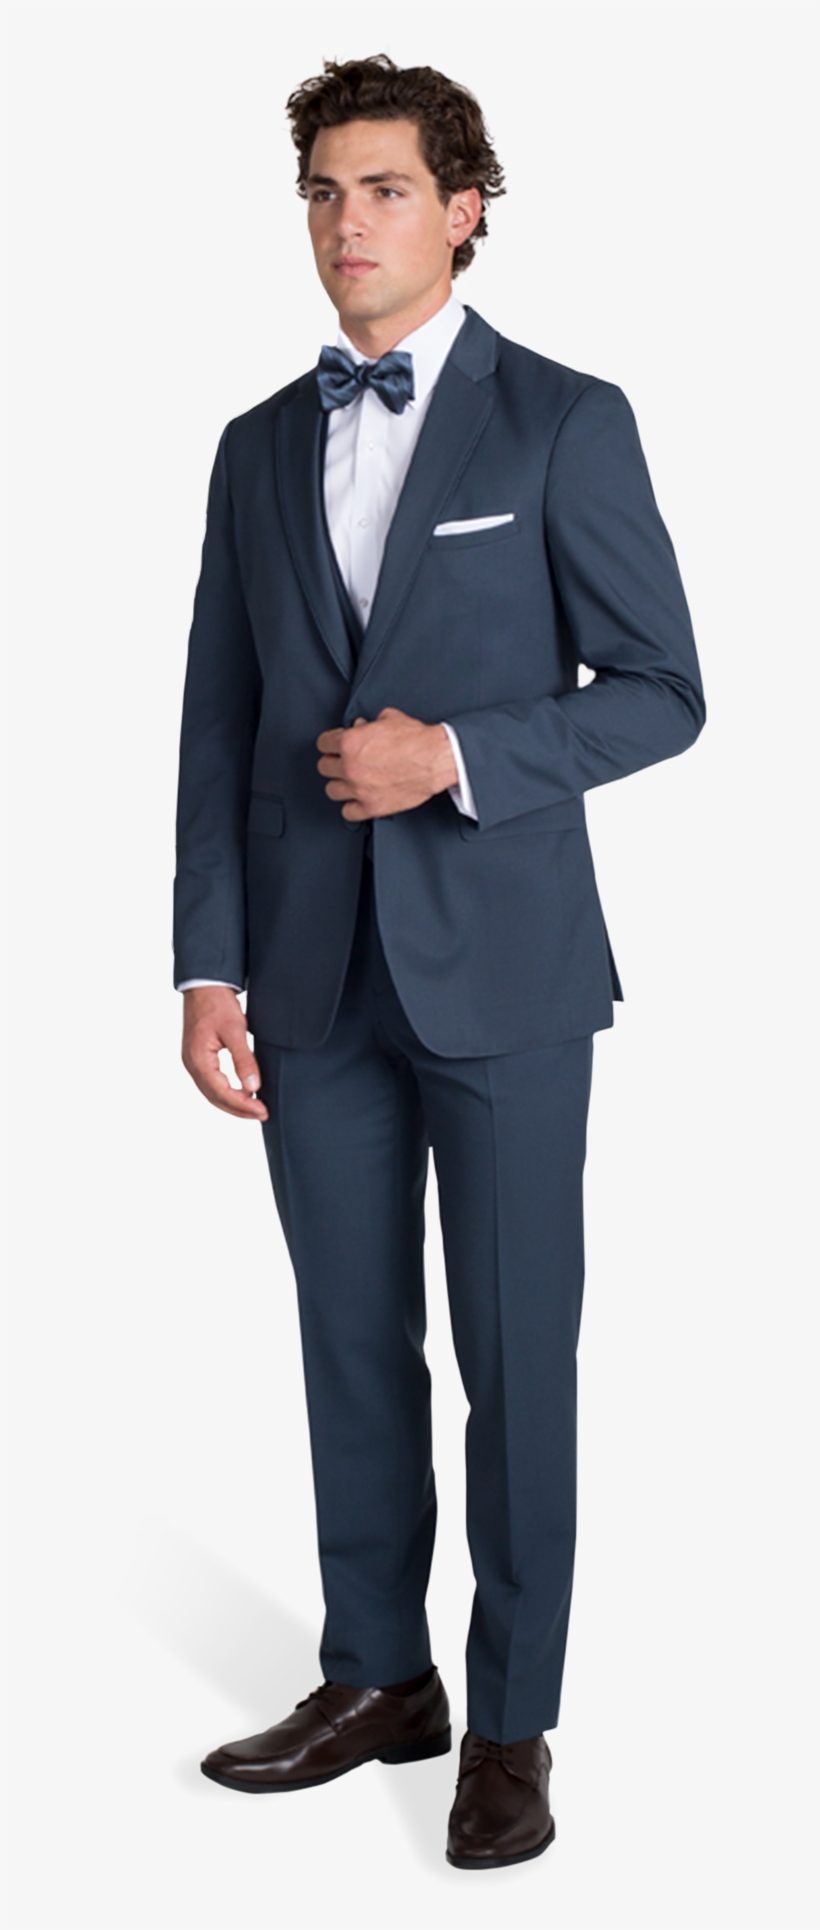 Slate Blue Notch Lapel Suit - Navy Blue Checked Suit, transparent png #8303311